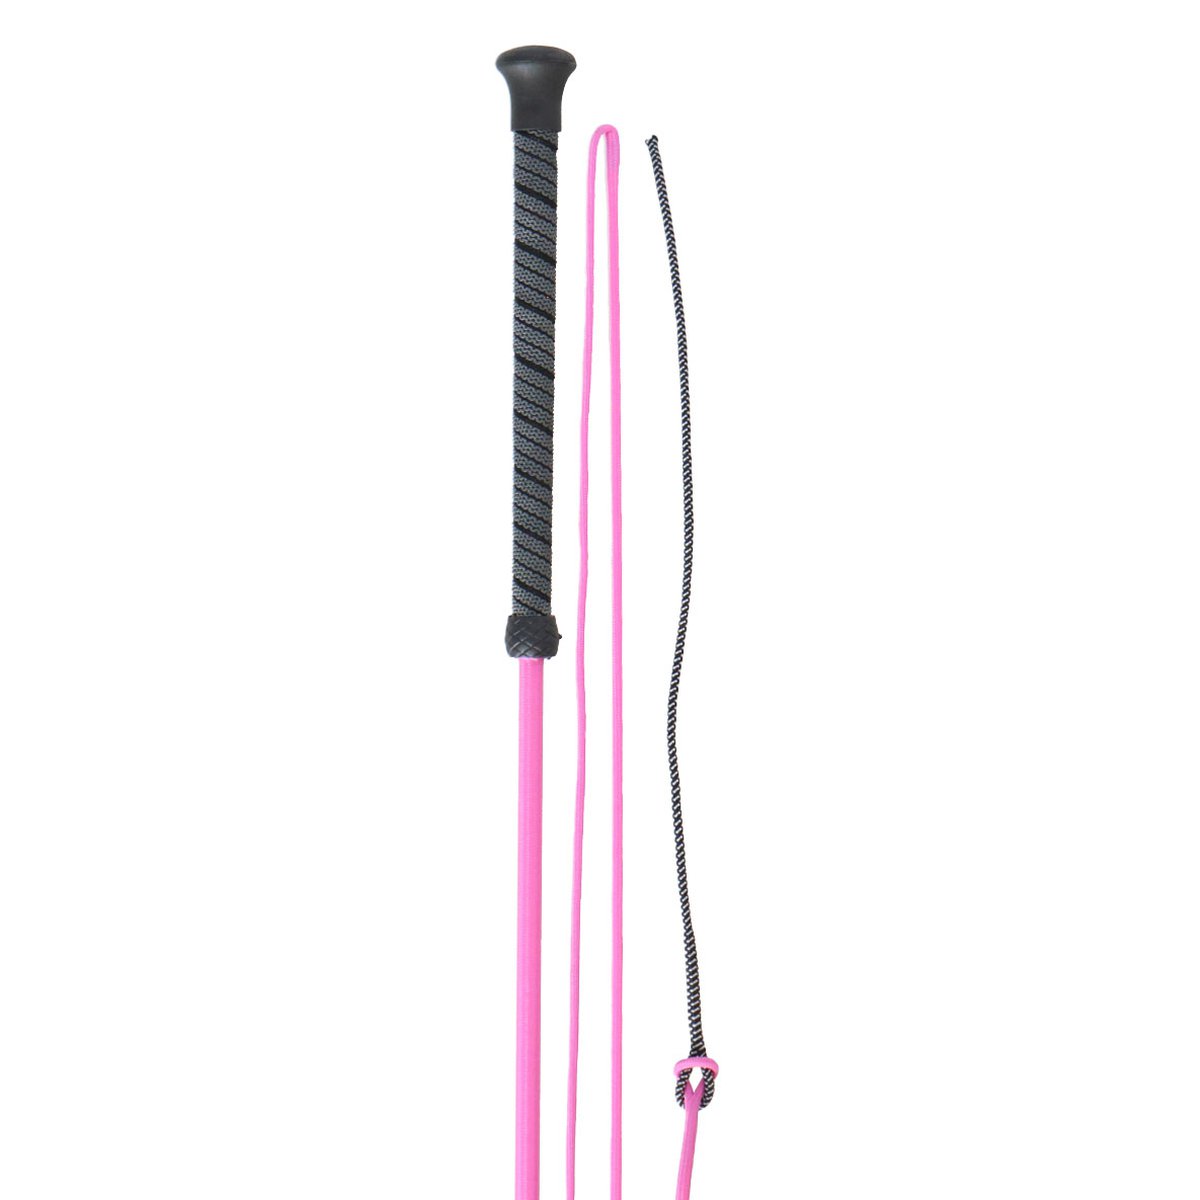 Longierpeitsche 160cm, pink